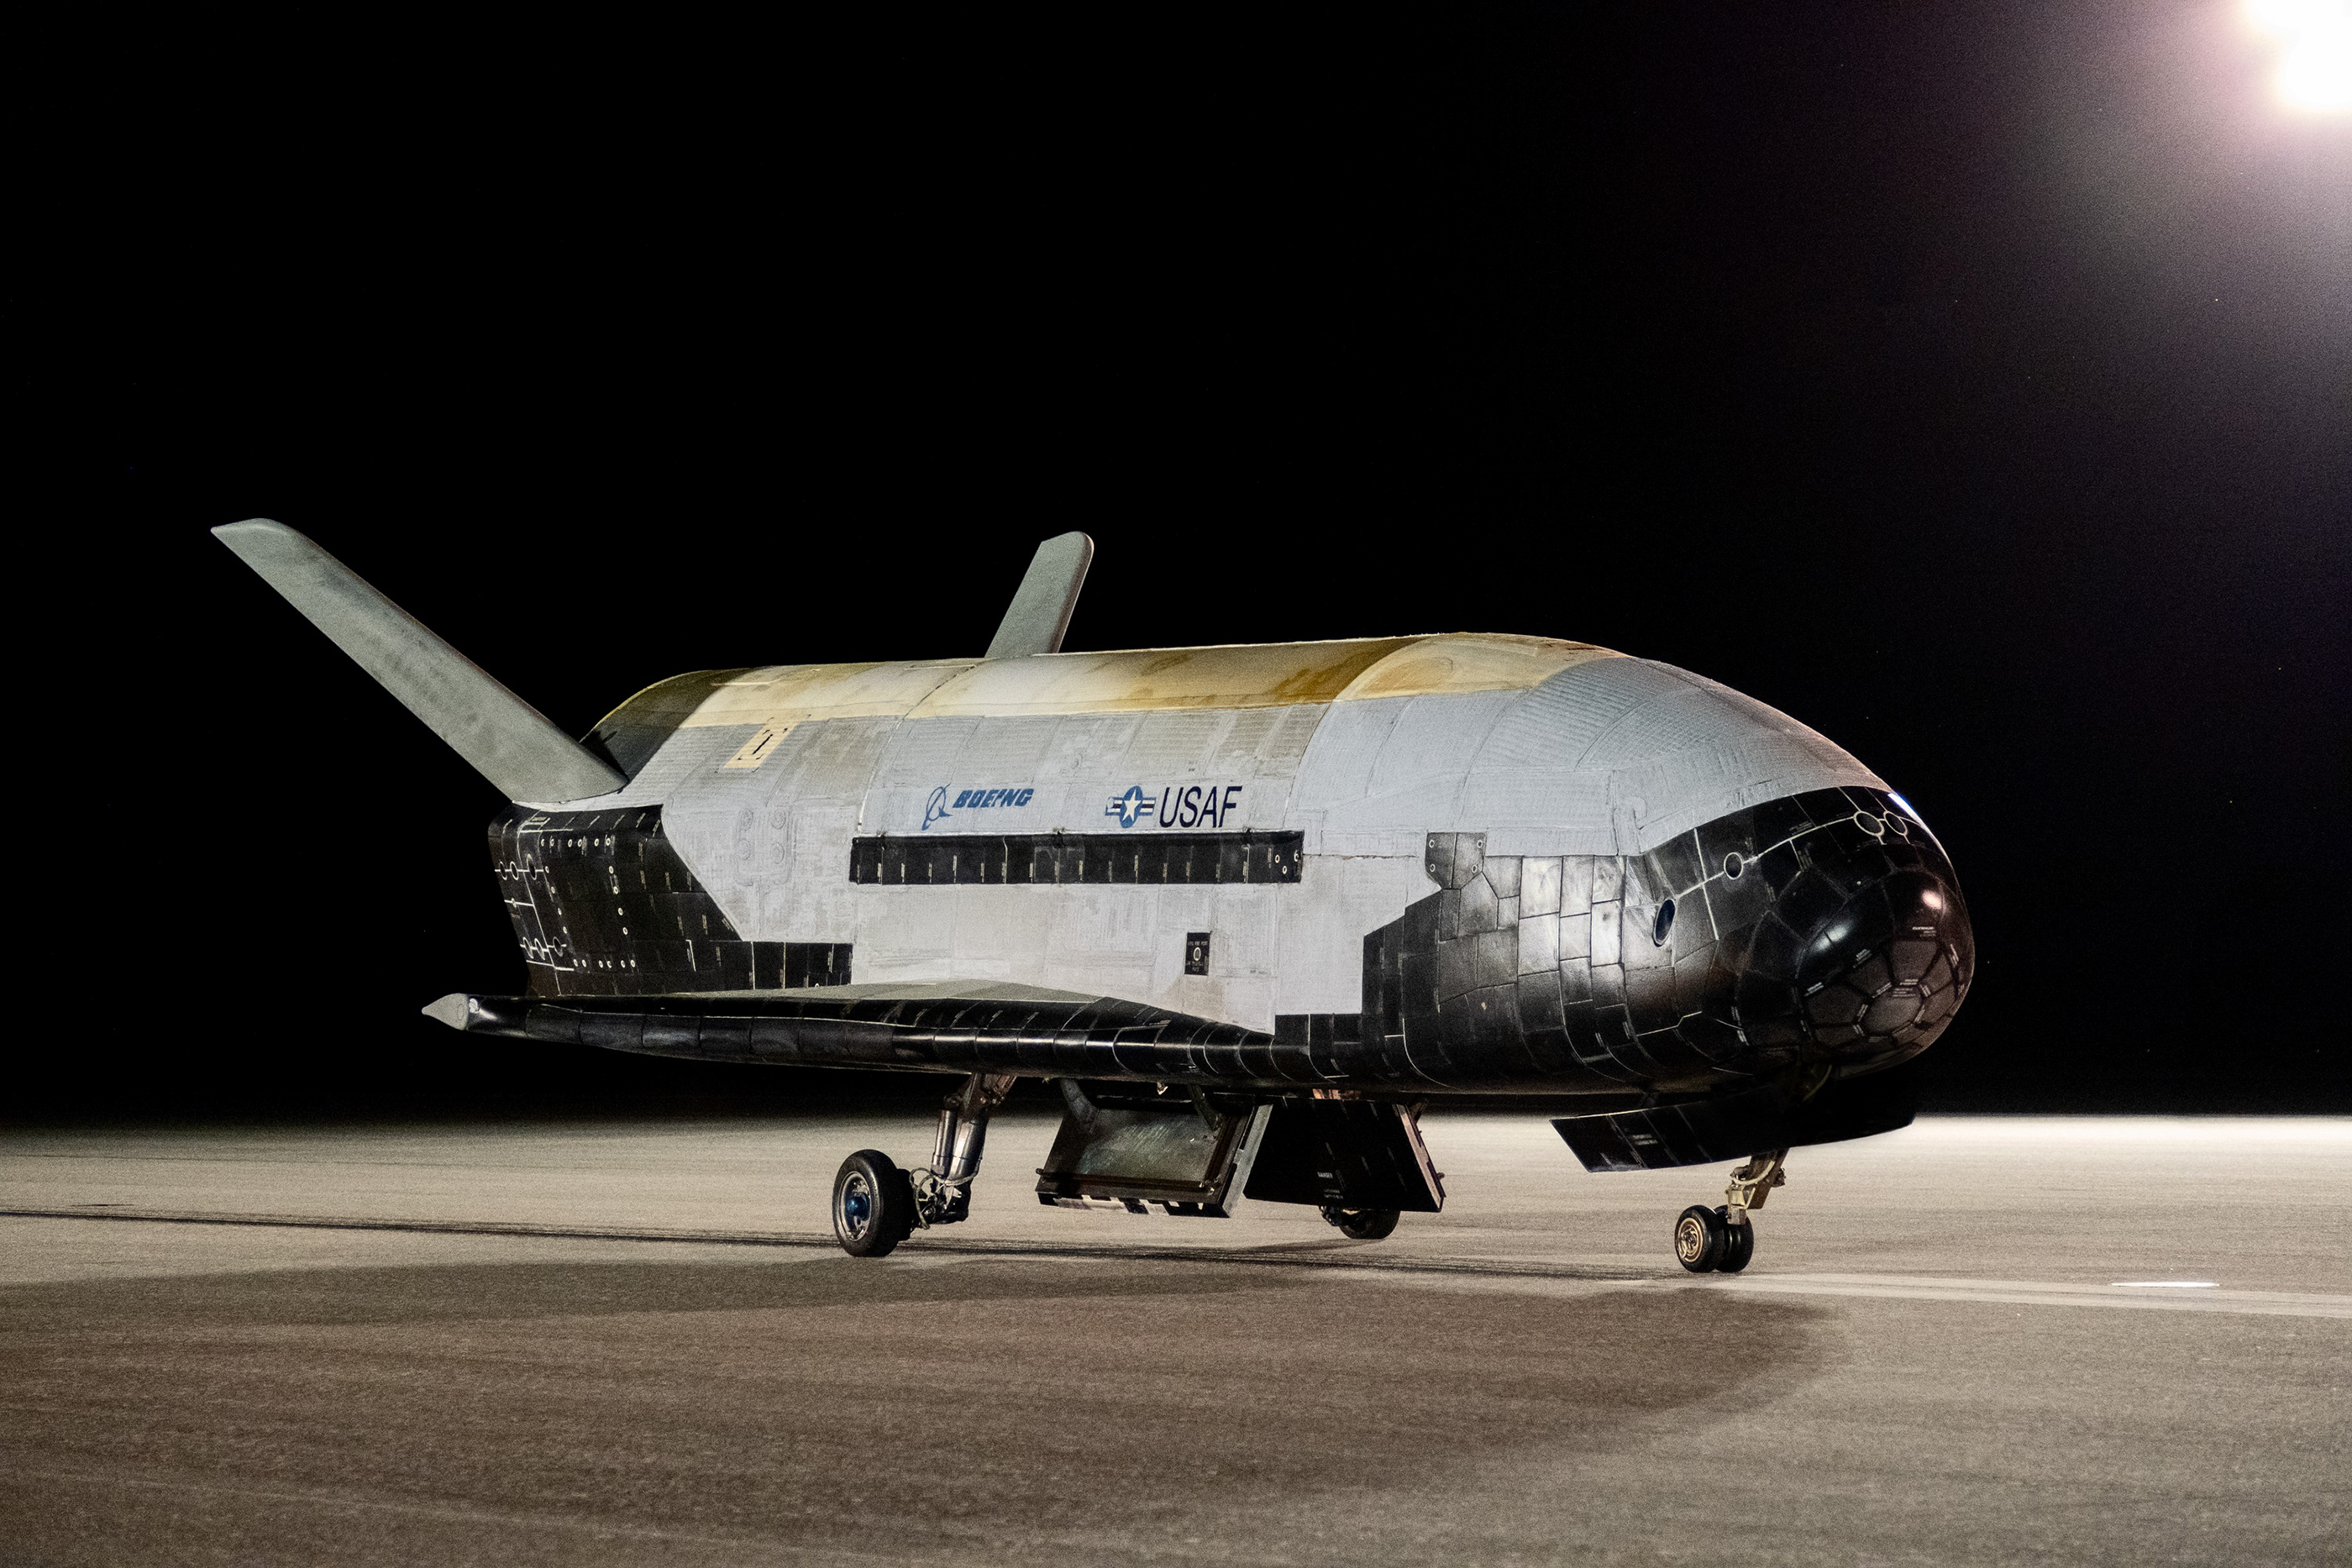 Retour sur Terre du X-37B après une mission record de 908 jours en orbite. © Boeing, US Space Force